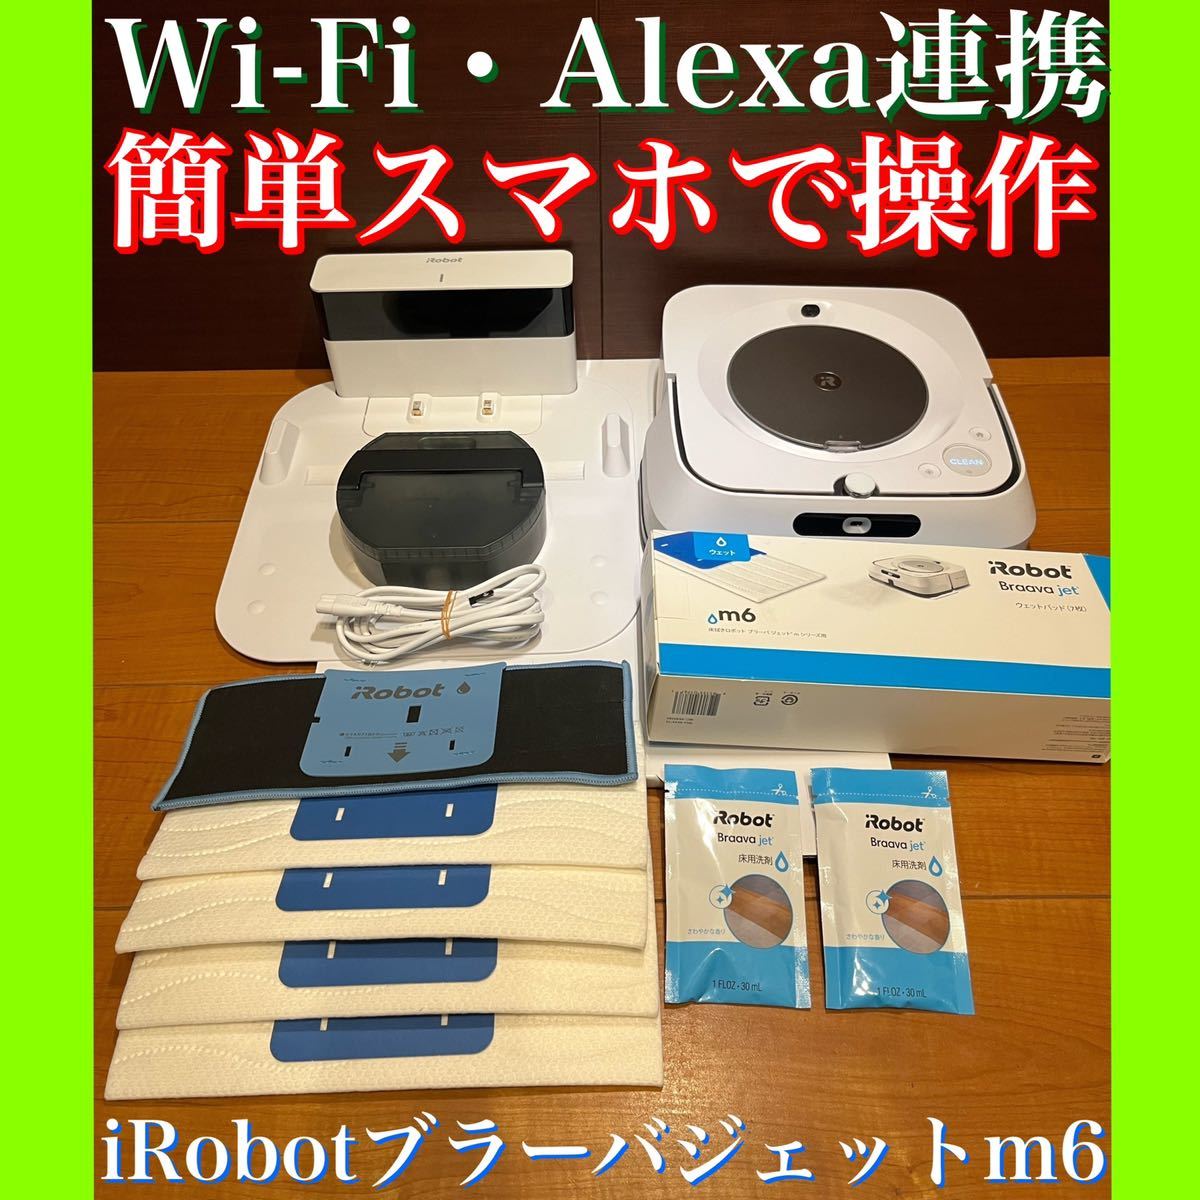 日本最大のブランド 使用回数少ない美品 簡単スマホで操作 Wi-Fi・Alexa連携 iRobot ブラーバジェットm6 床拭きロボット スマート家電  アレルギー対策 - 掃除機、クリーナー - reachahand.org